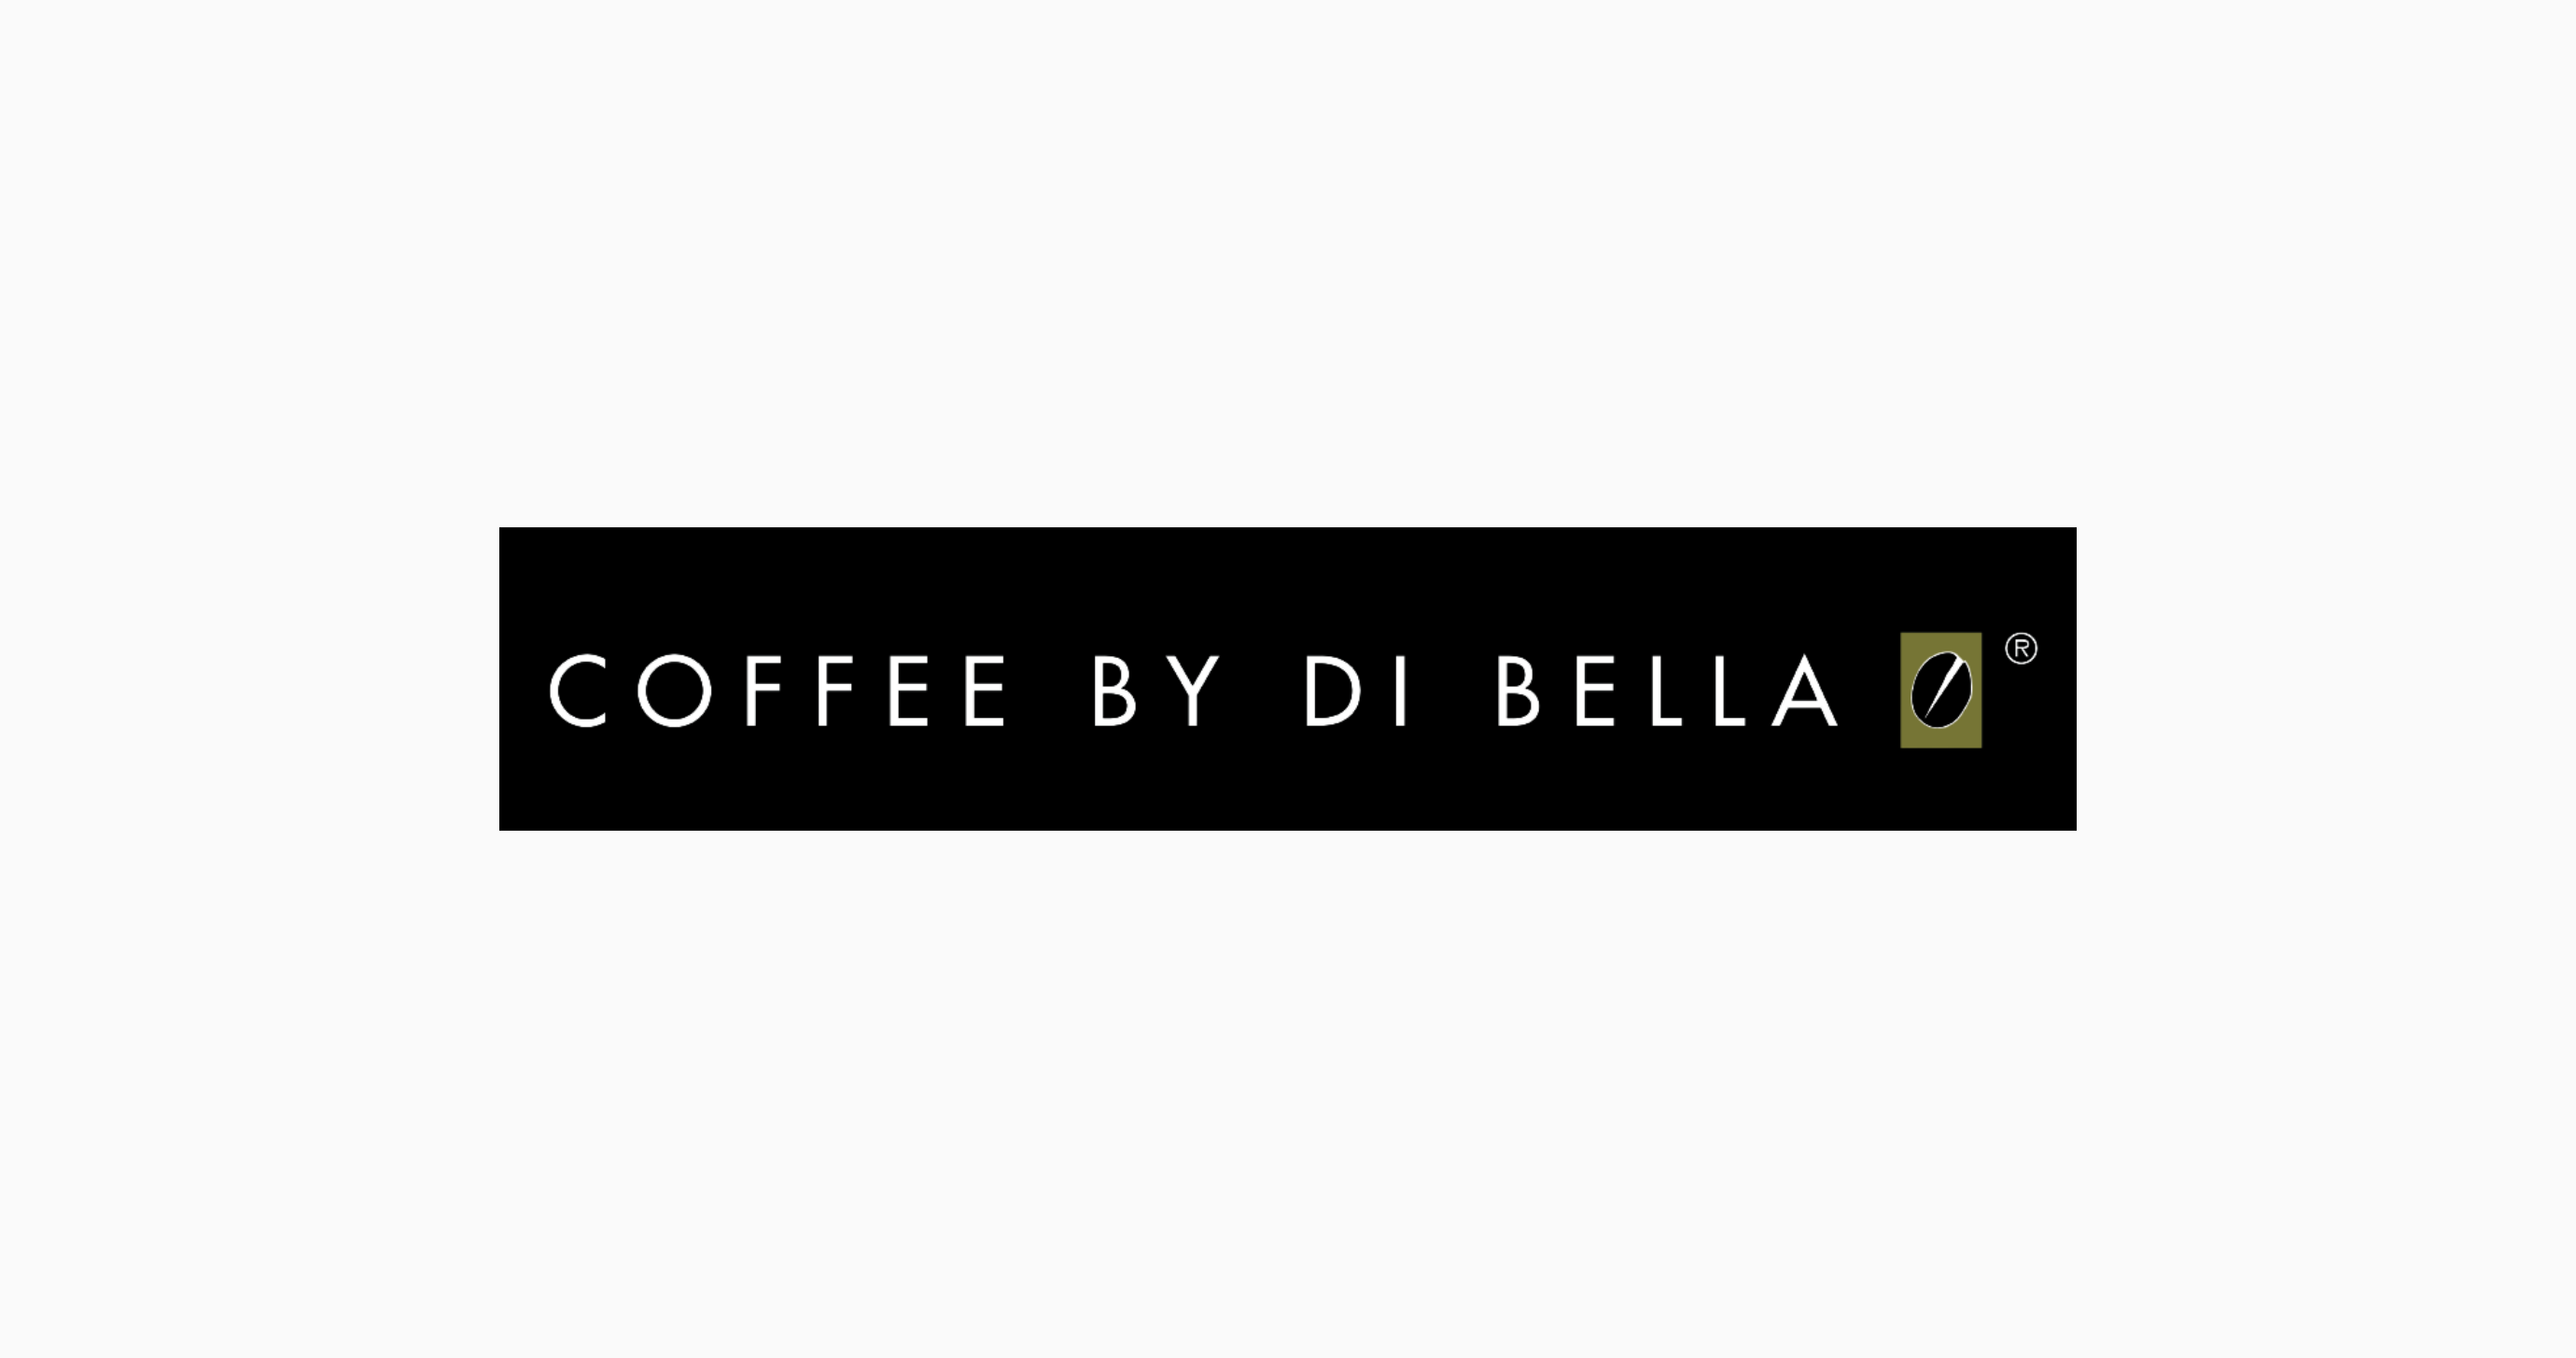 Coffee by di bella